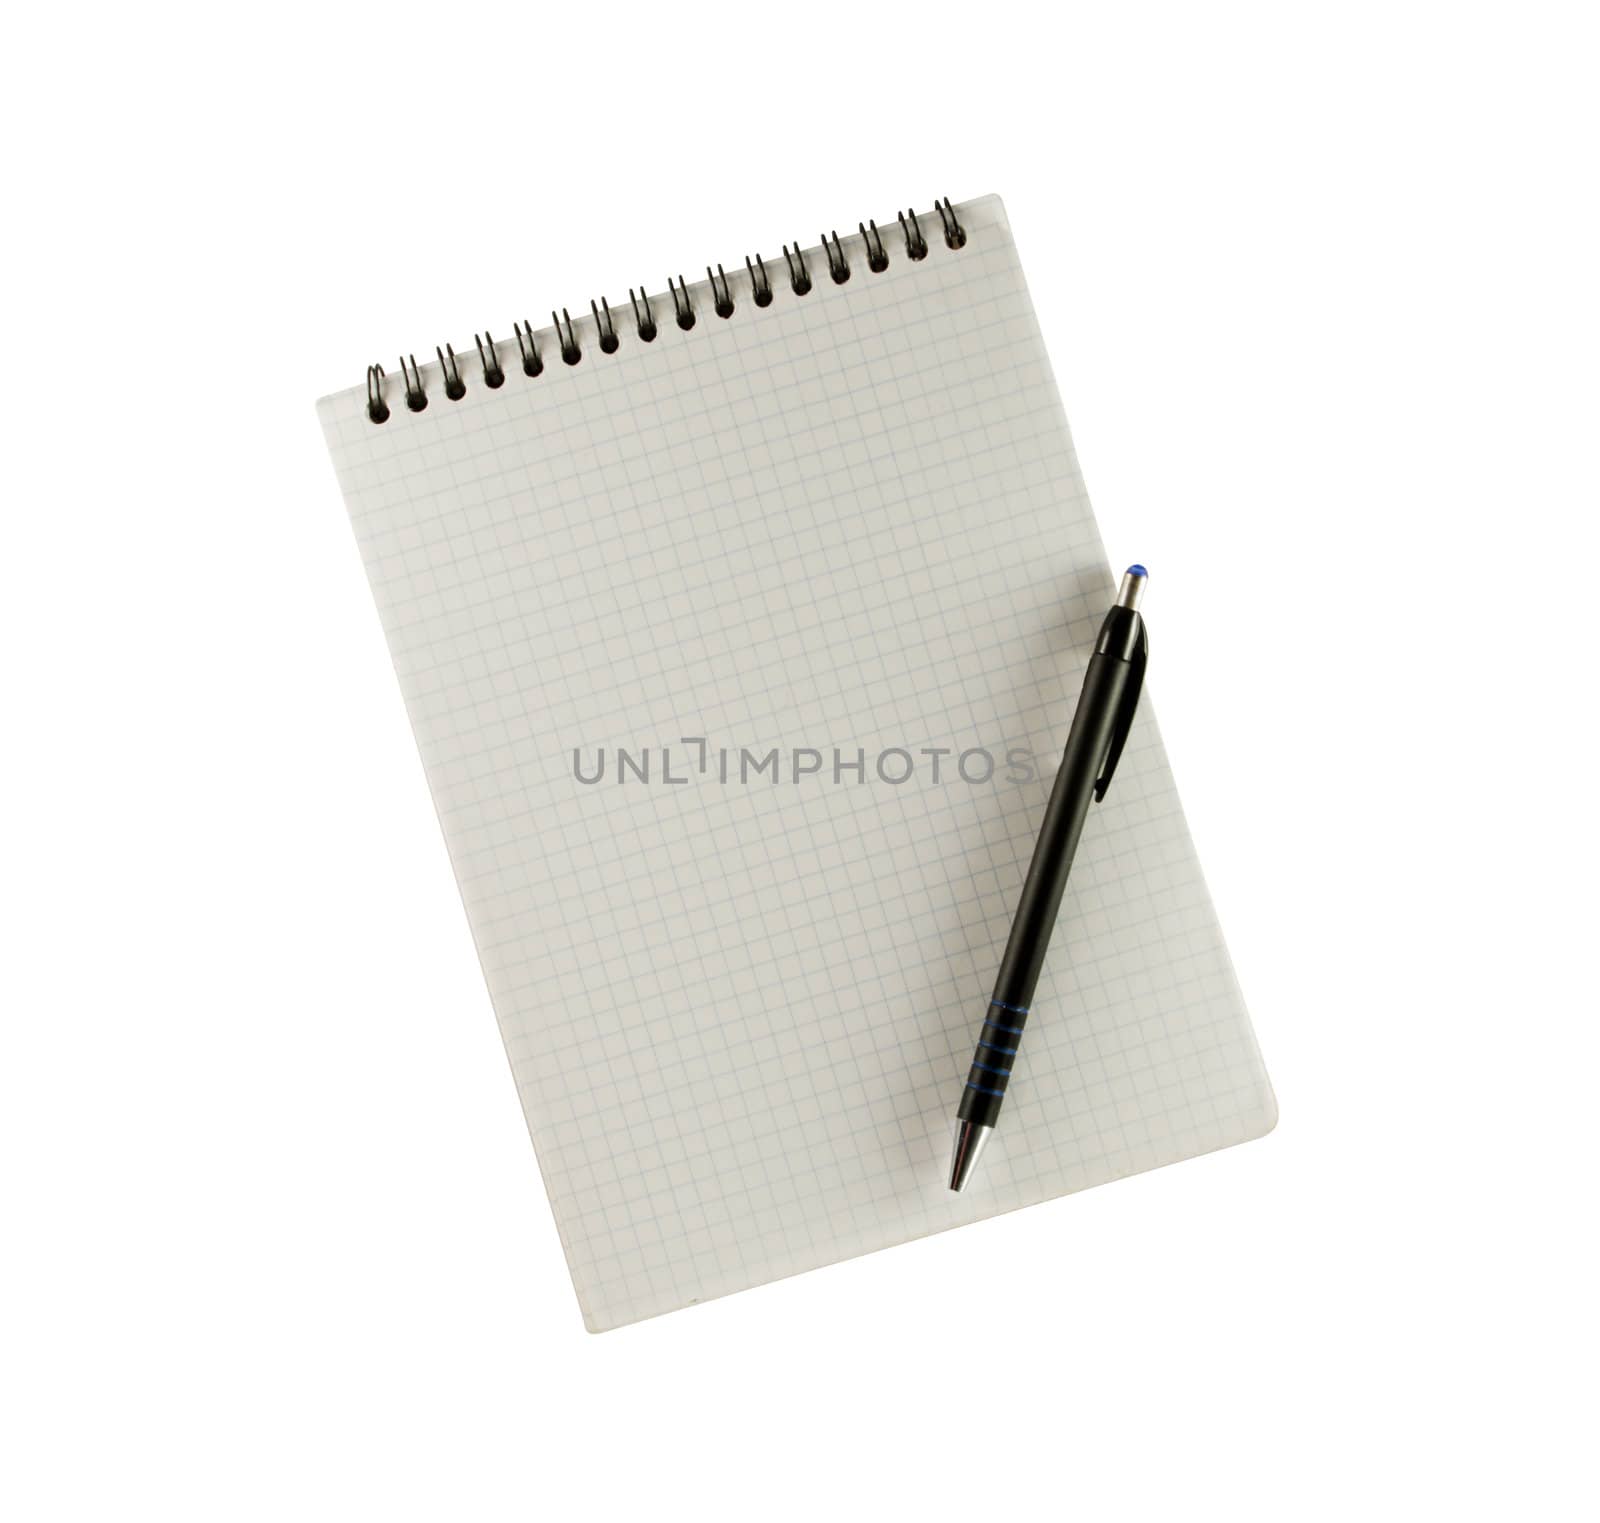 an open notebook with pen